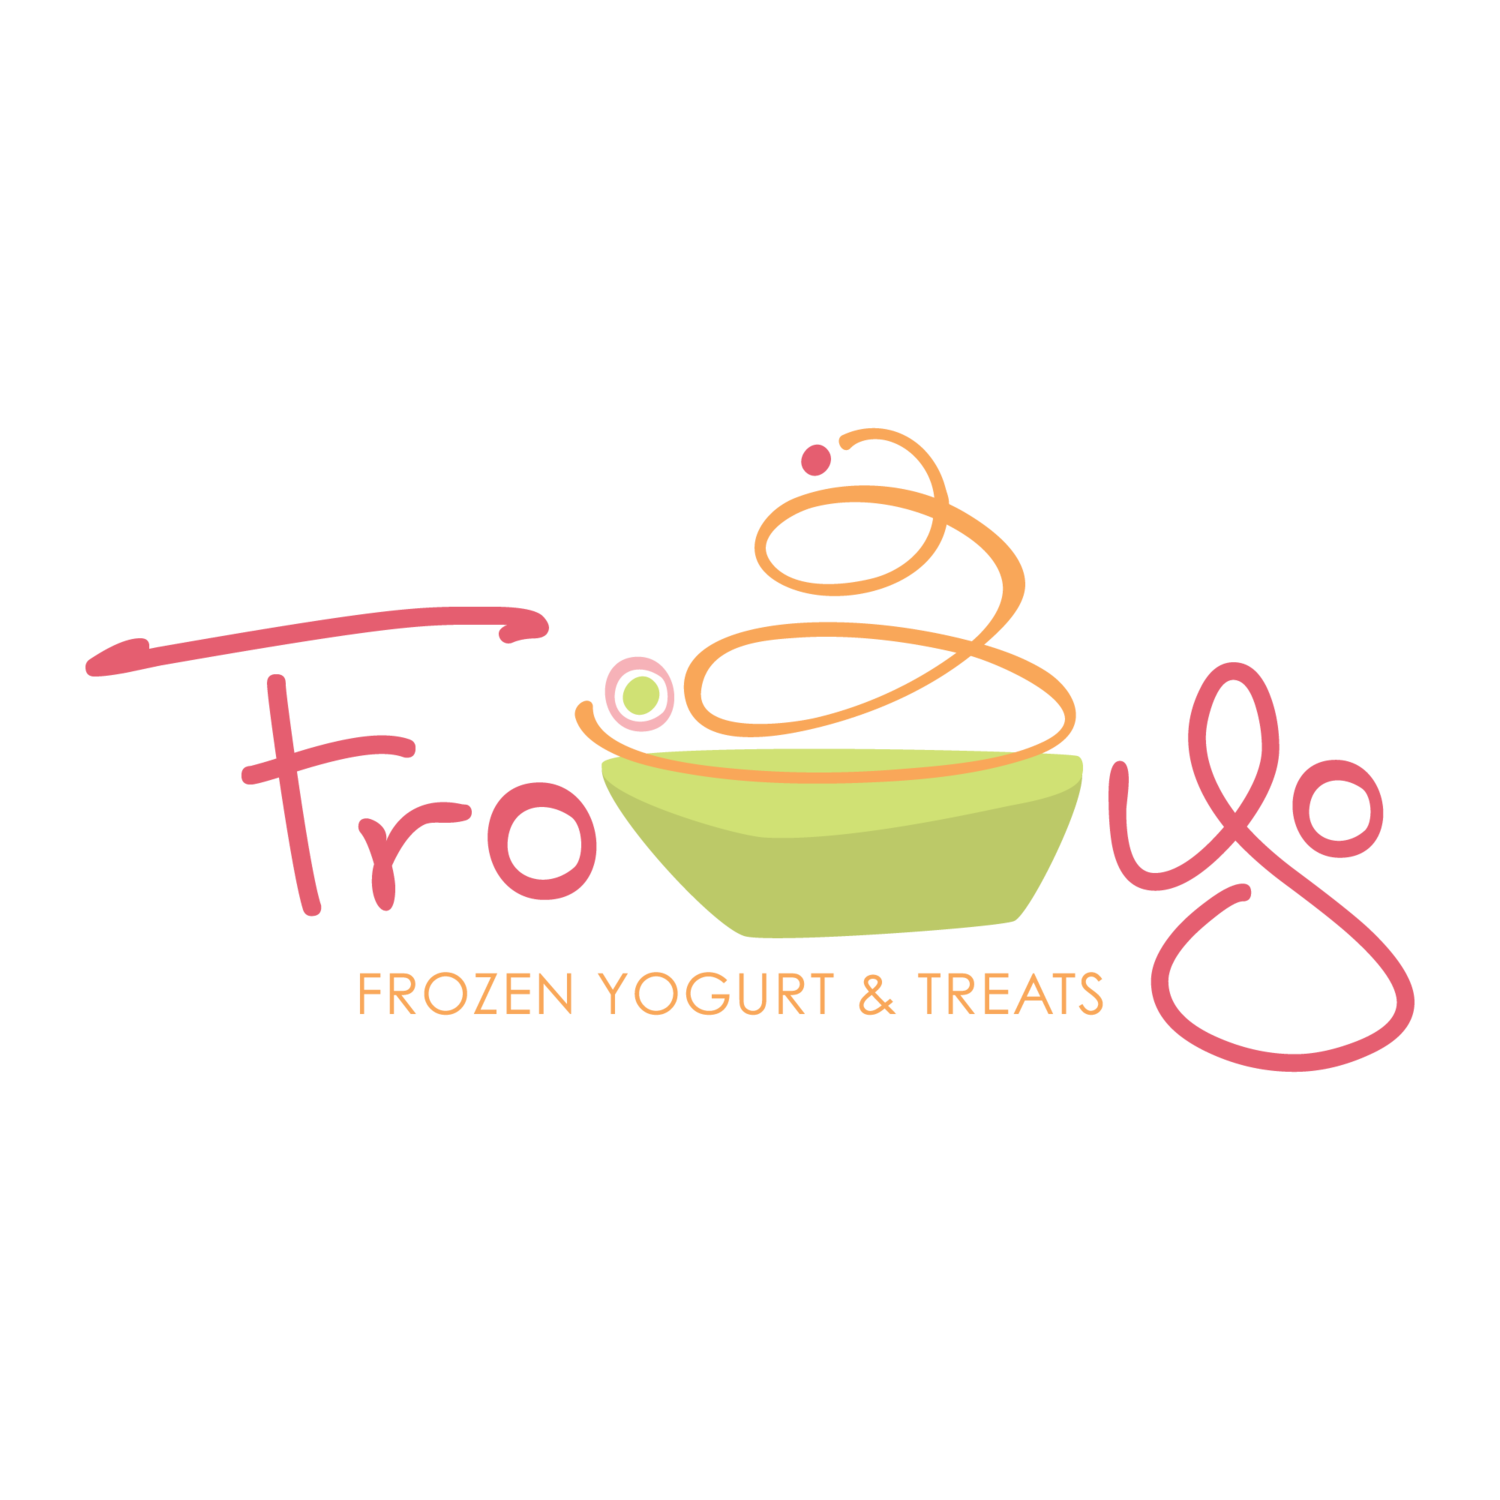 Fro-yo and Treats